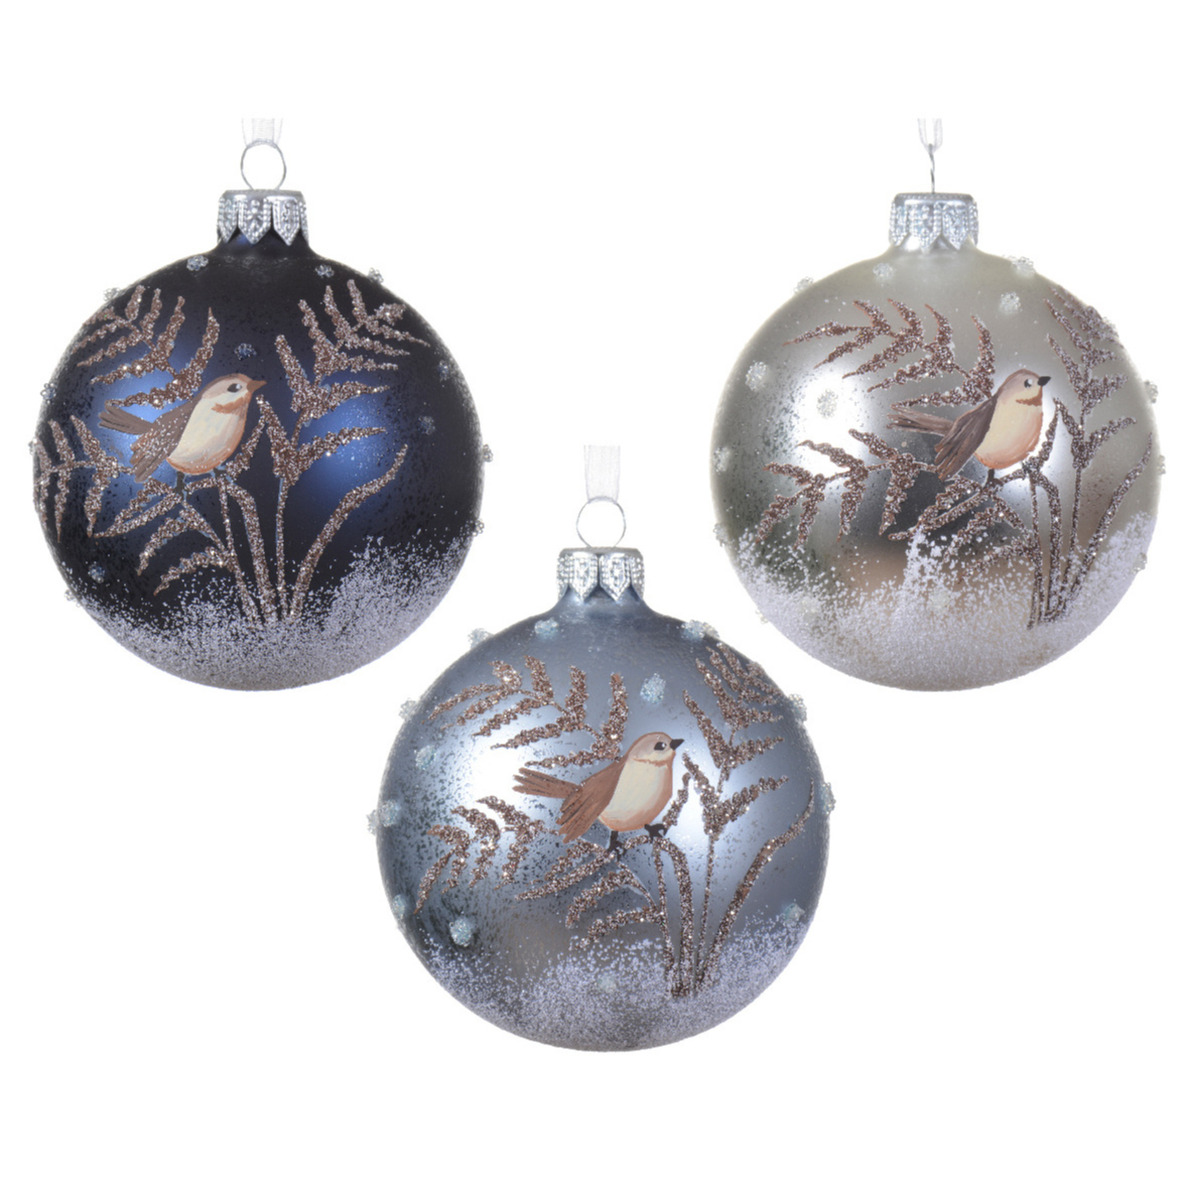 Luxe kerstballen 6x st vogel opdruk donkerblauw, ijsblauw en zilver glas 8 cm